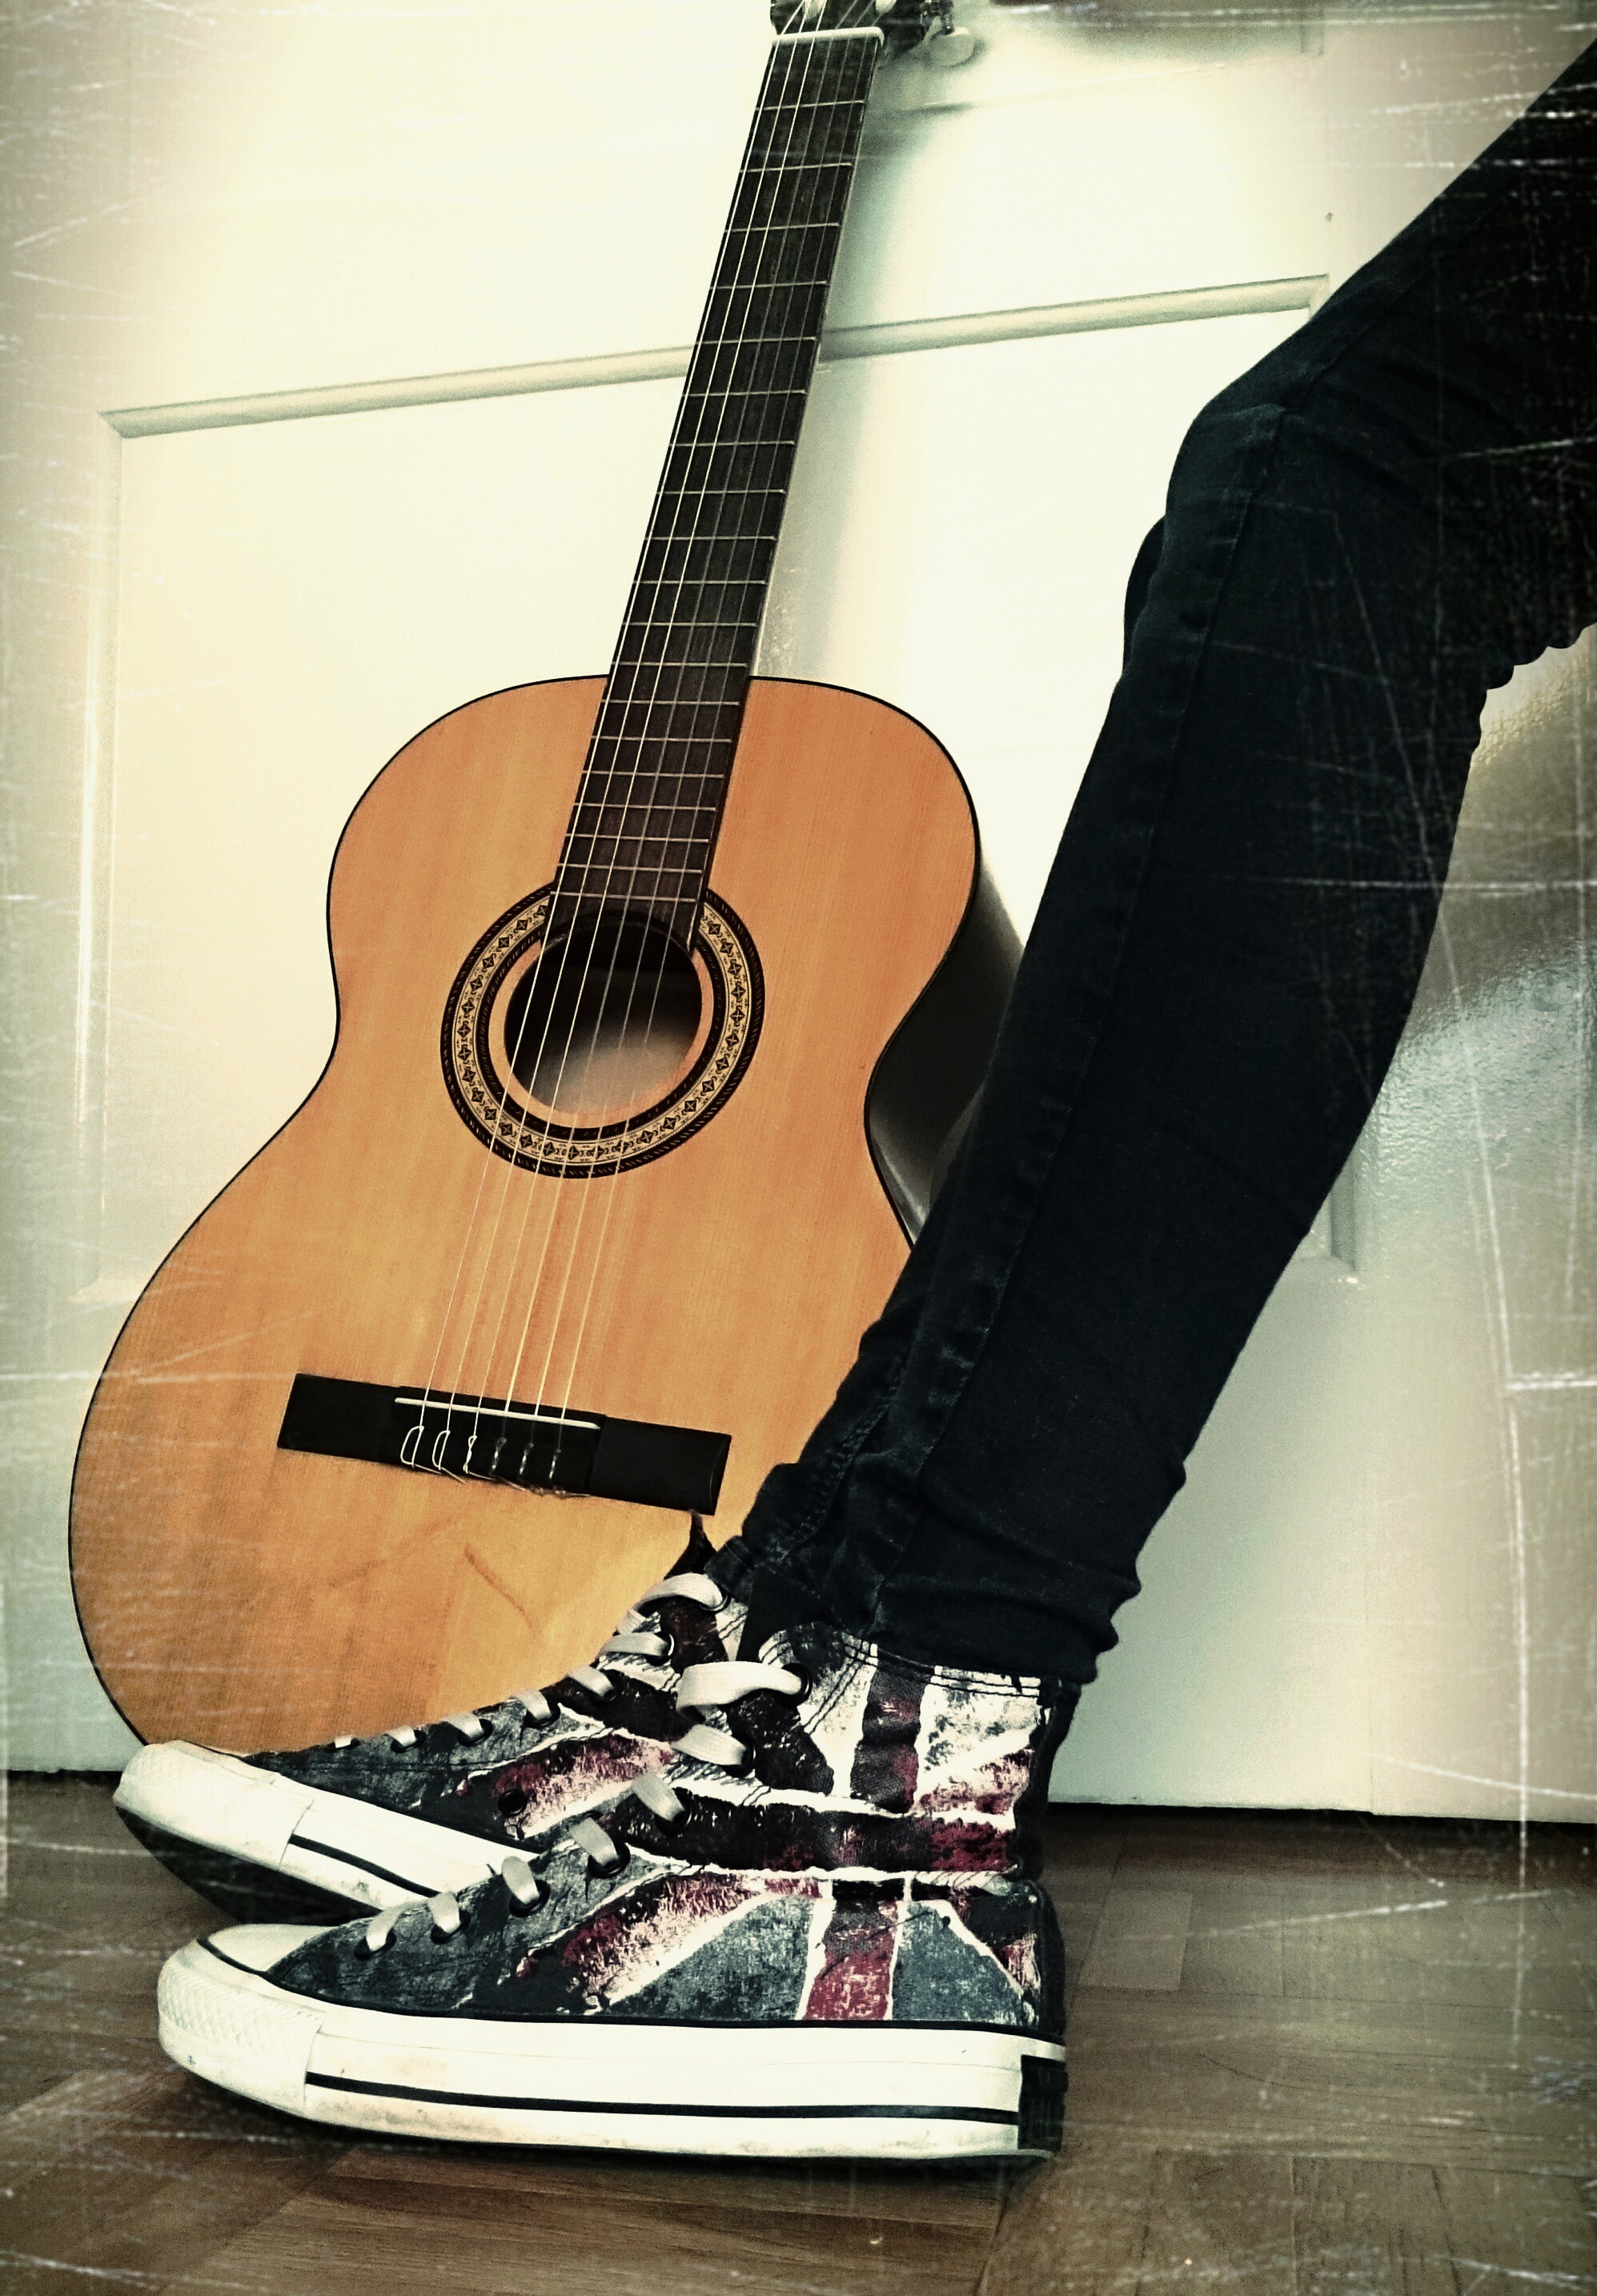 Bild von meiner Gitarre